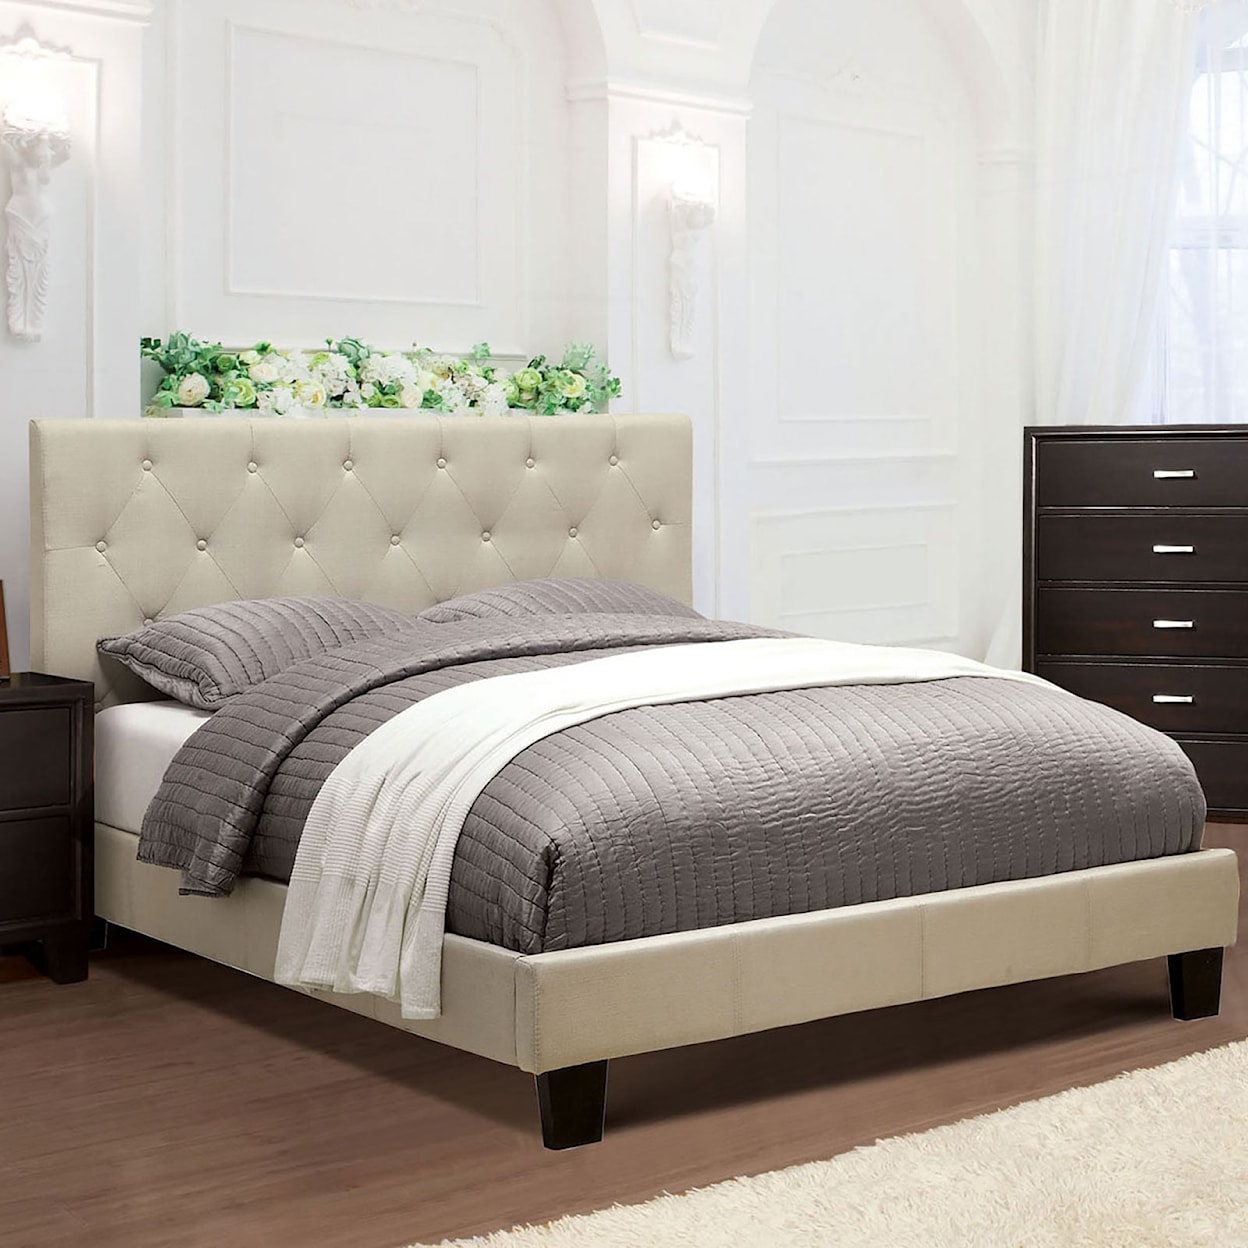 Furniture of America Leeroy King Bed